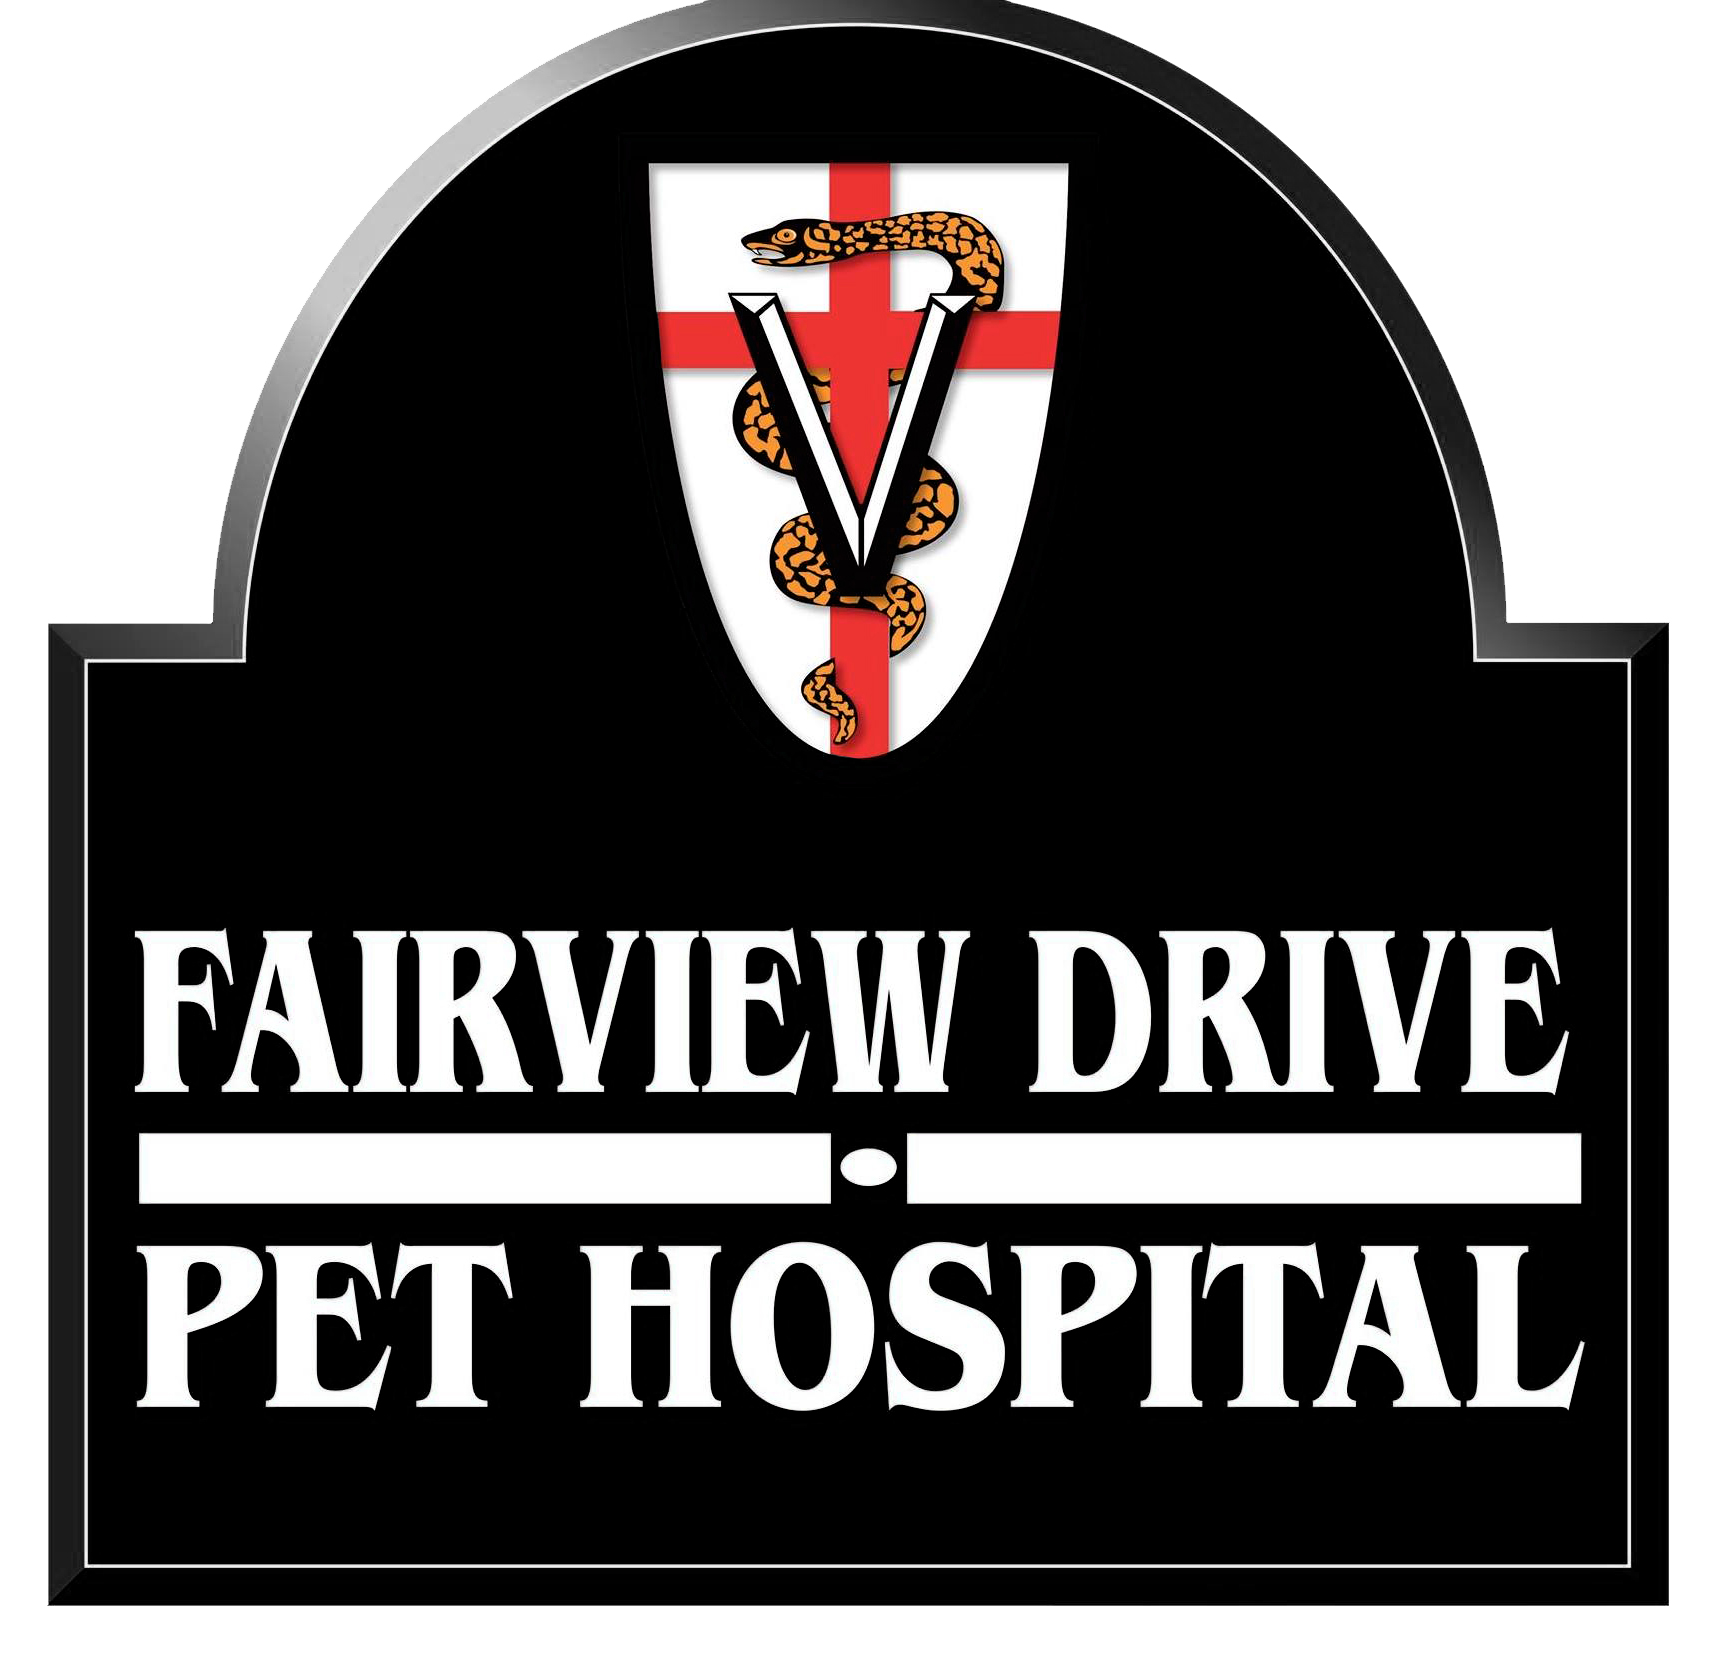 Fairview Drive Pet Hospital